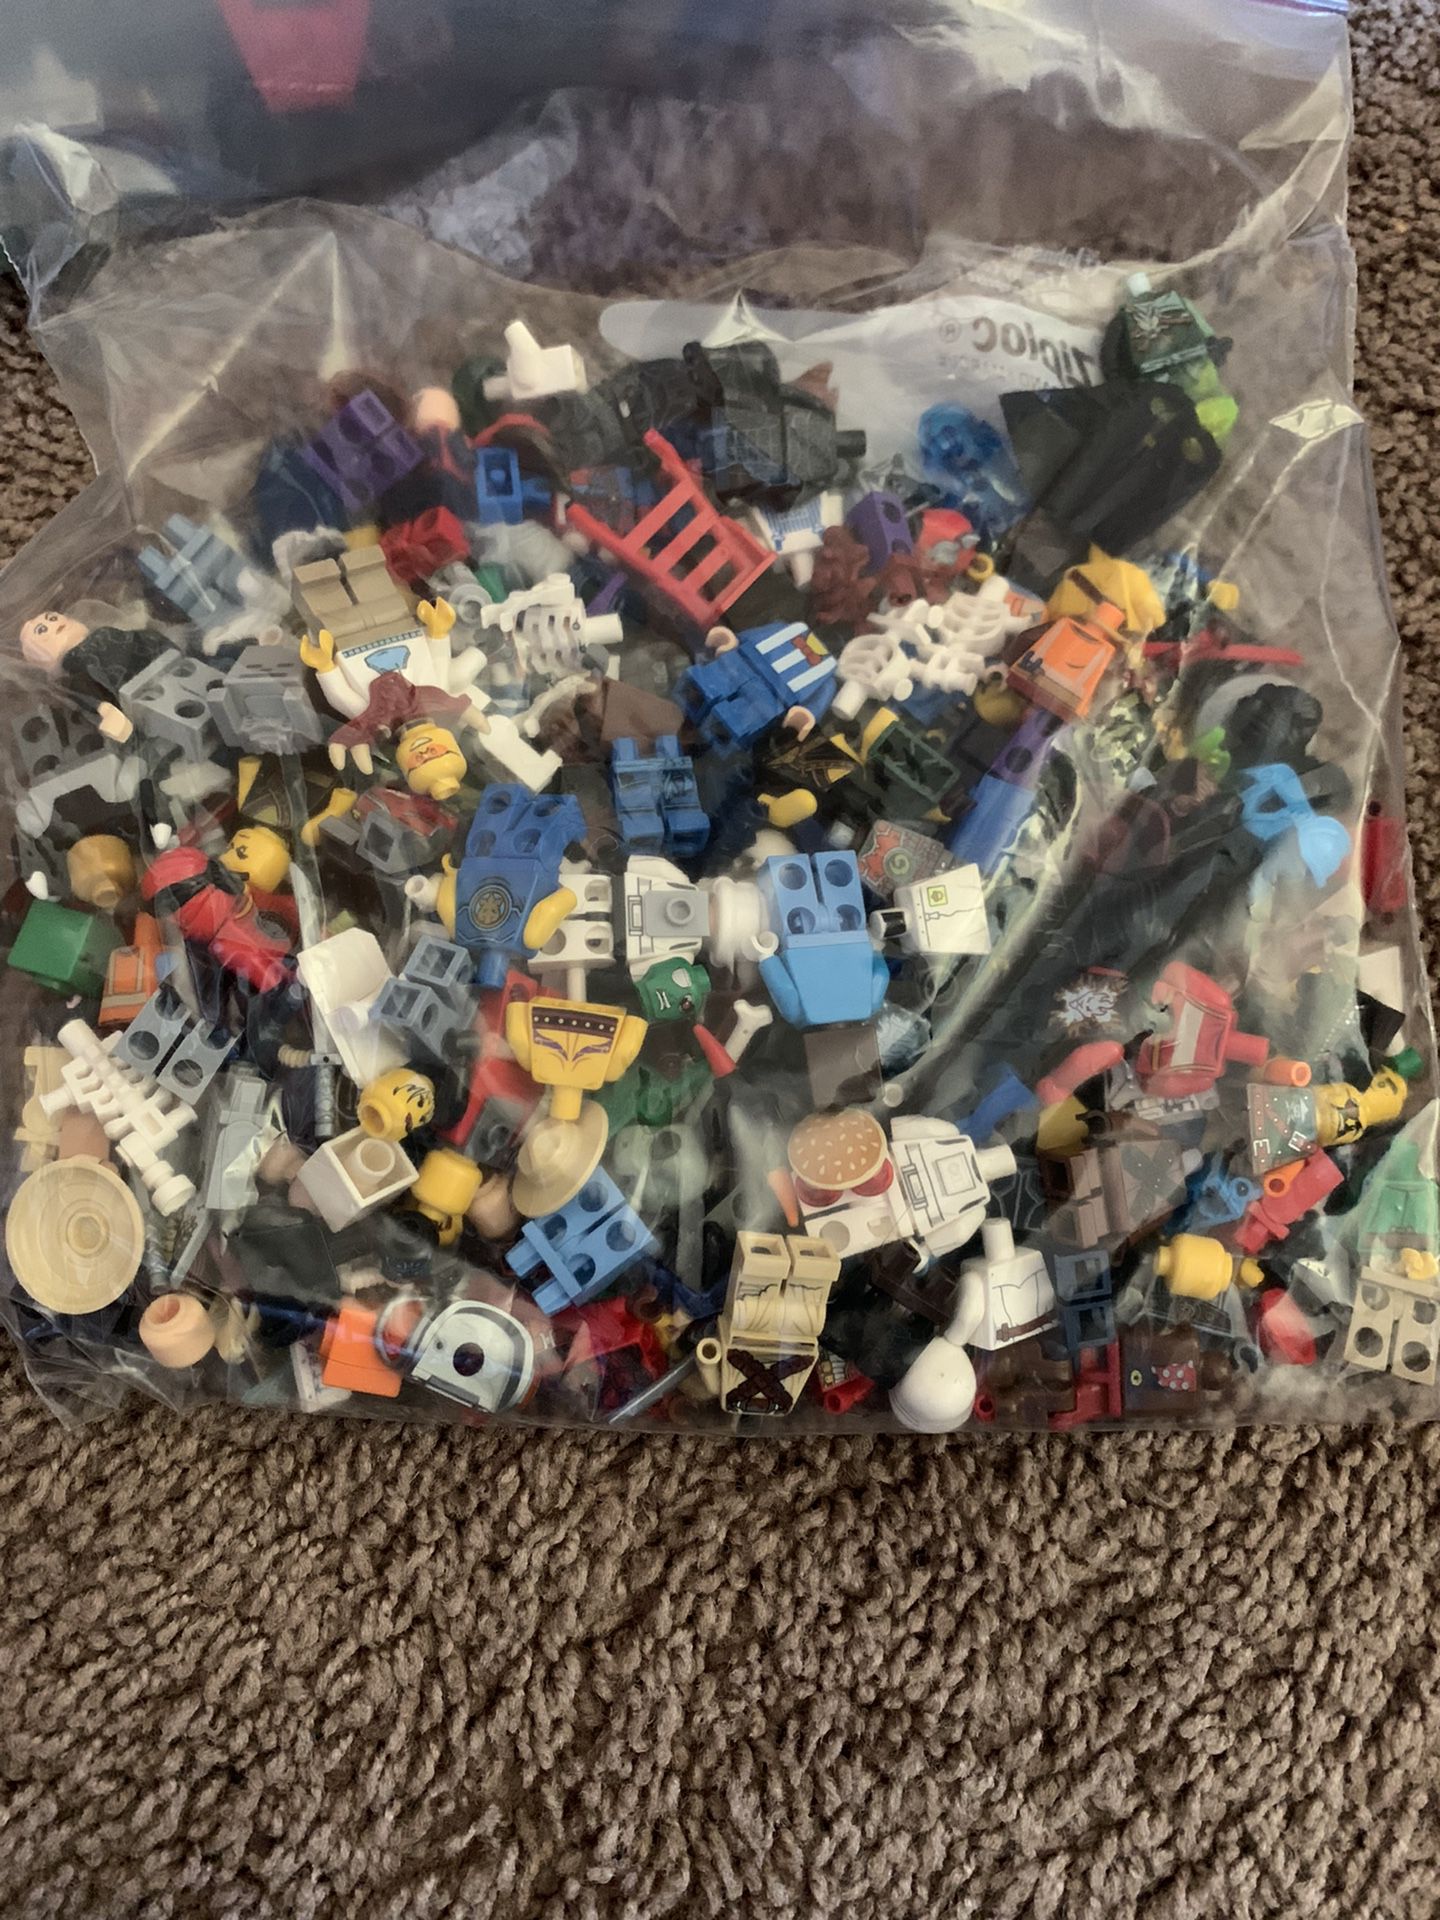 Legos